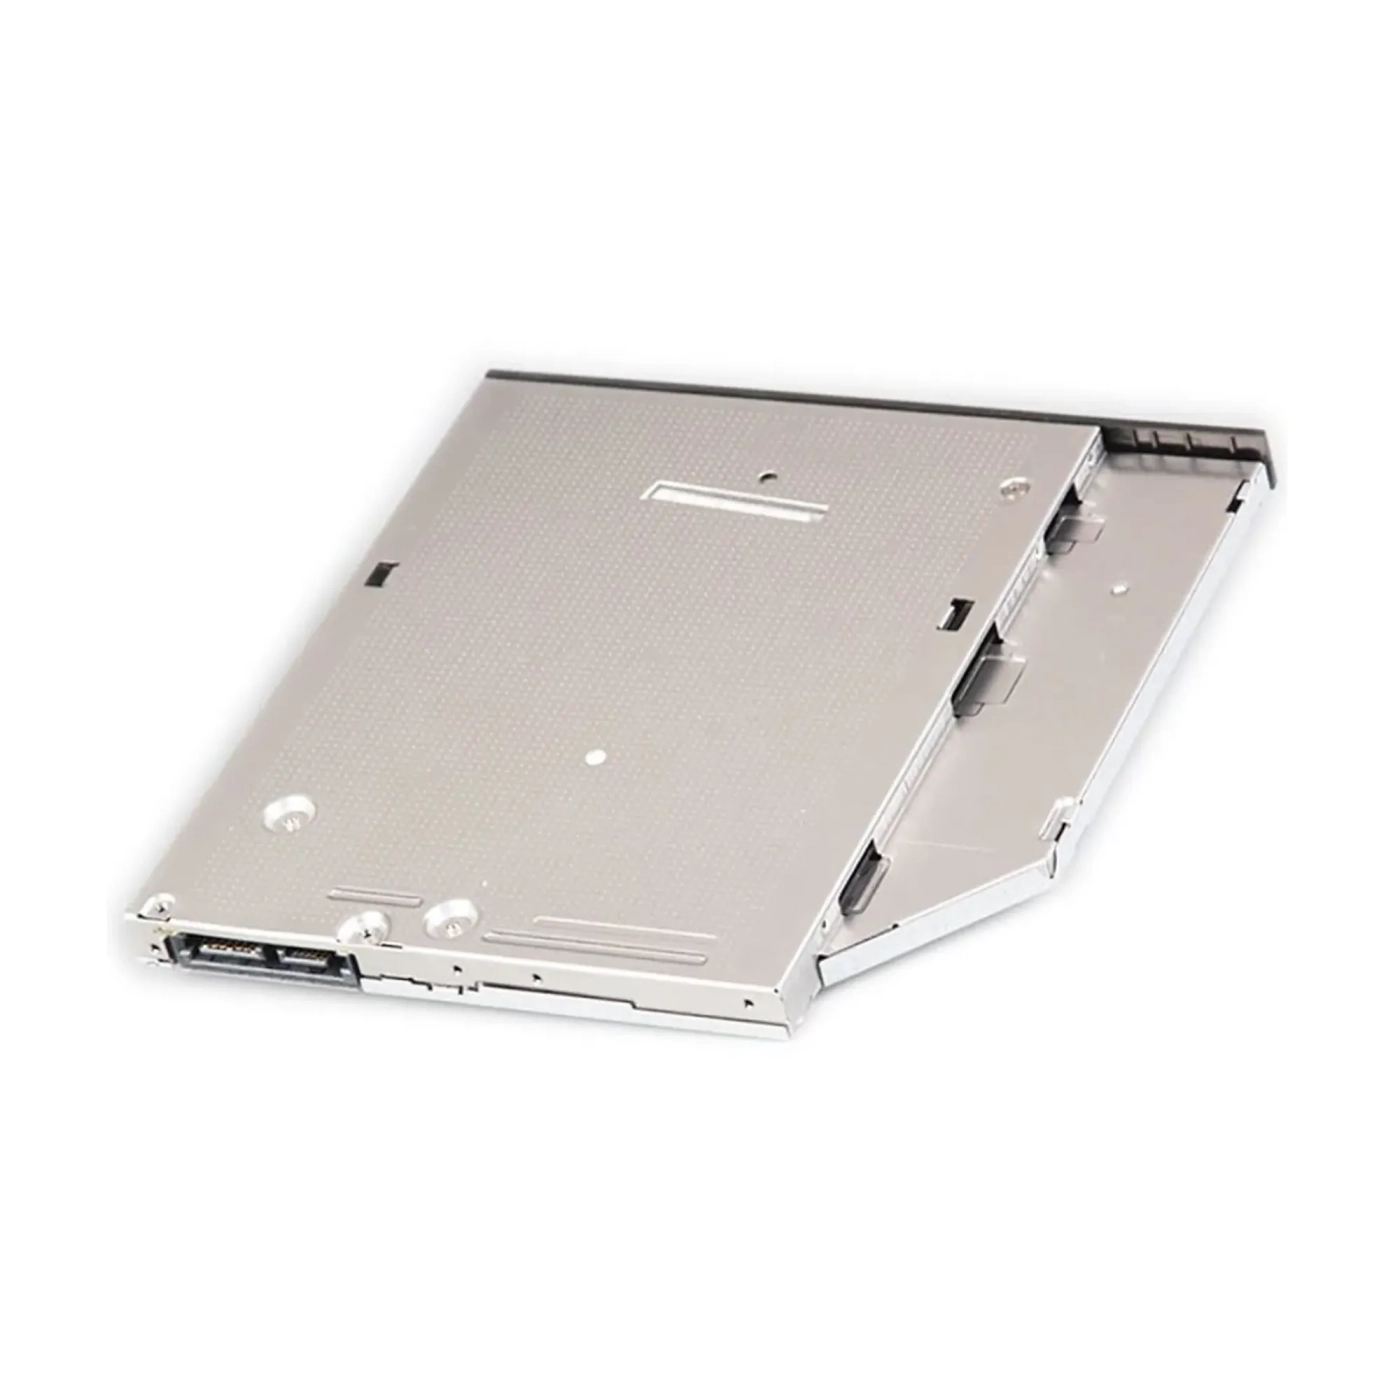 Купити DVD±RW привод для ноутбука SATA 9.5mm Hitachi-LG GU90N SuperSlim OEM - фото 6